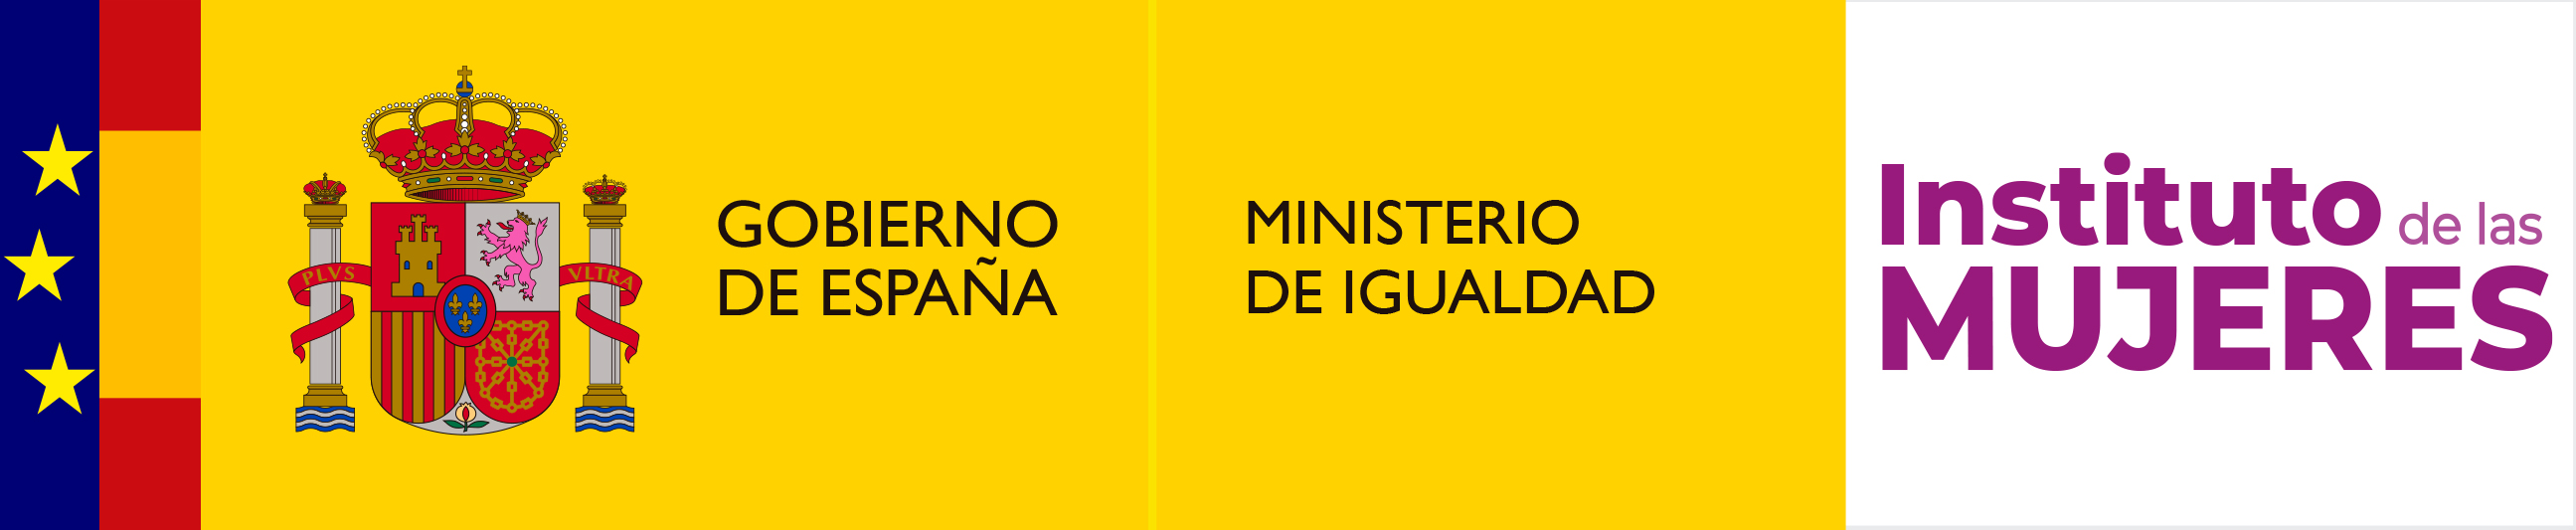 Faldón de logotipos con el escudo de España y los siguientes textos: Gobierno de España, Ministerio de Igualdad, Intituto de las Mujeres